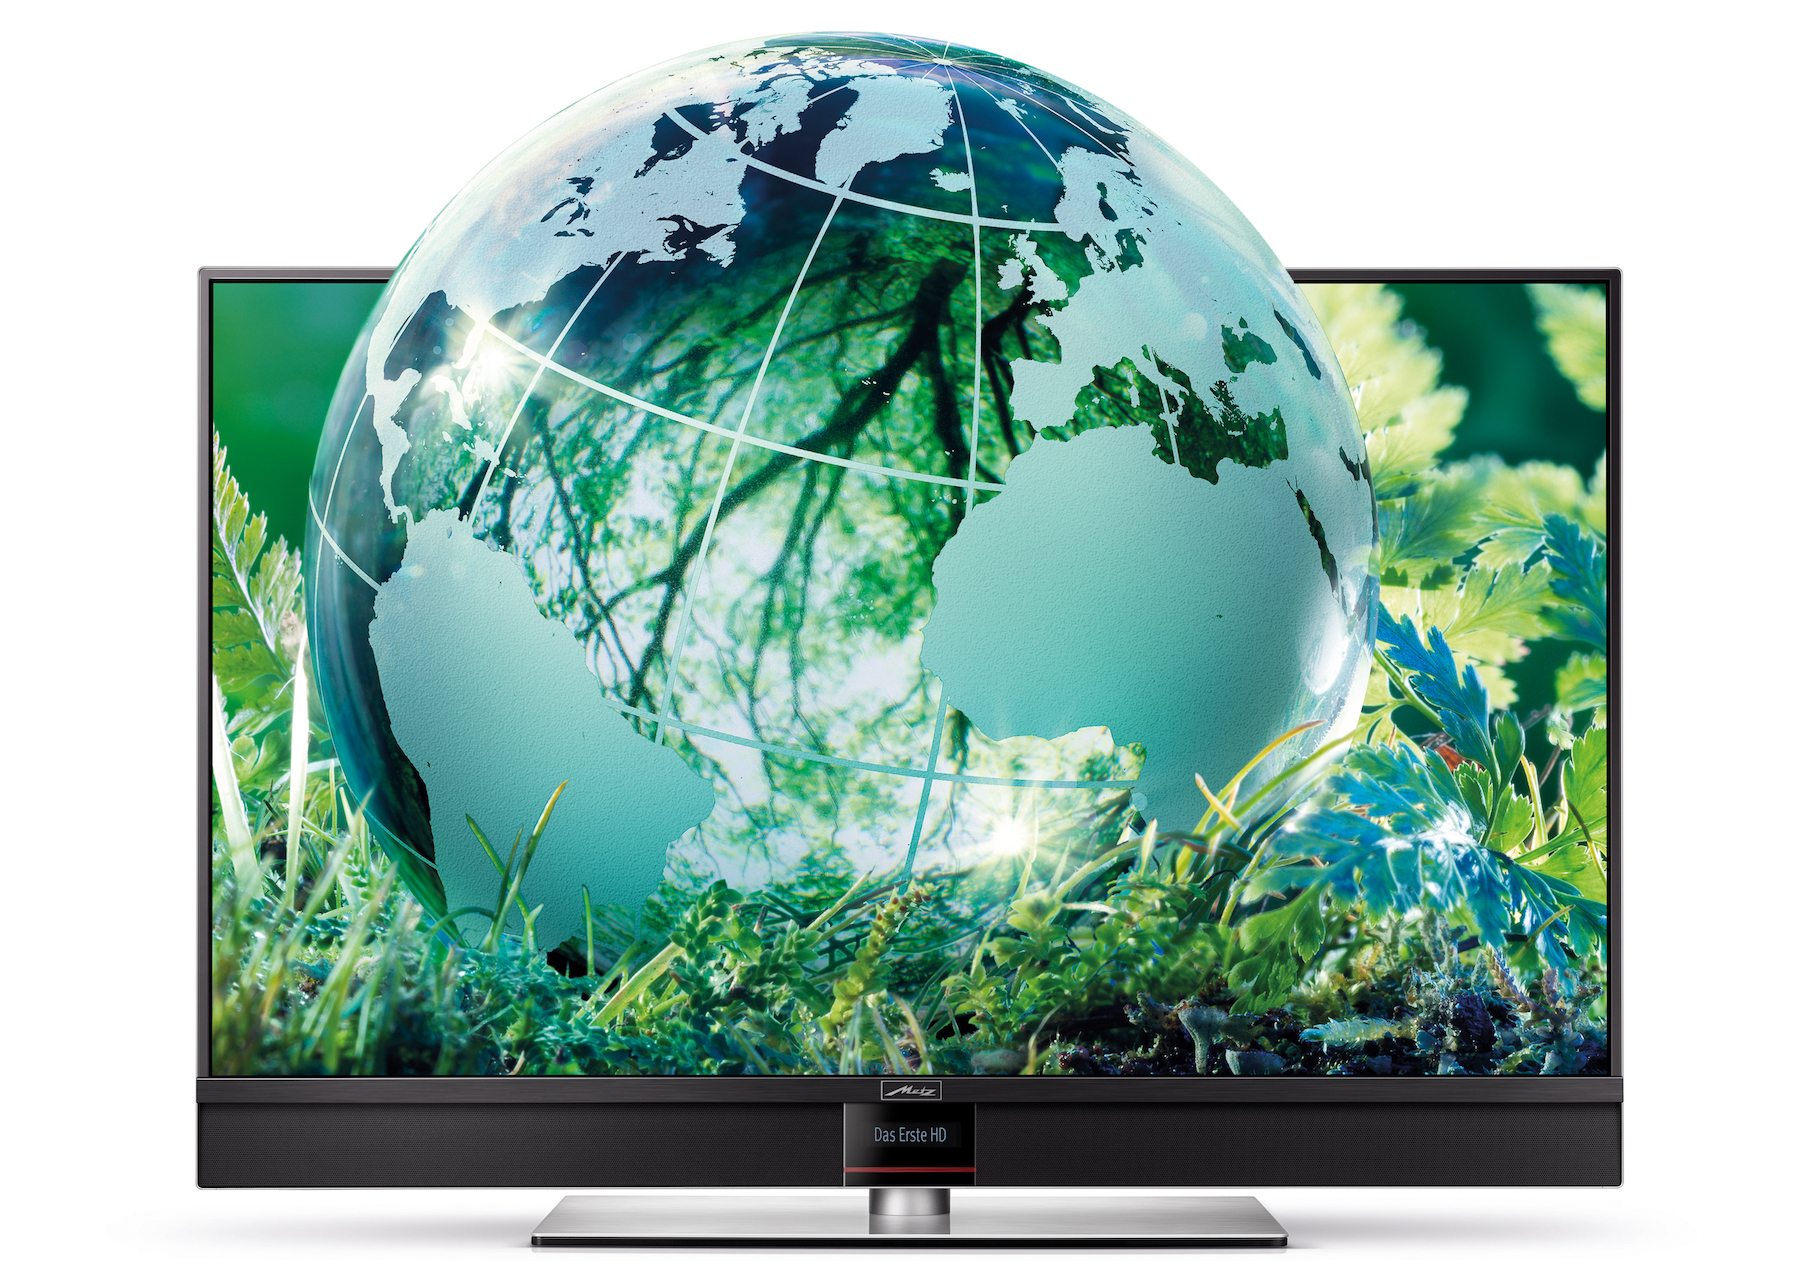 Fernseher zurückgeben beim Neukauf und Re-use ermöglichen